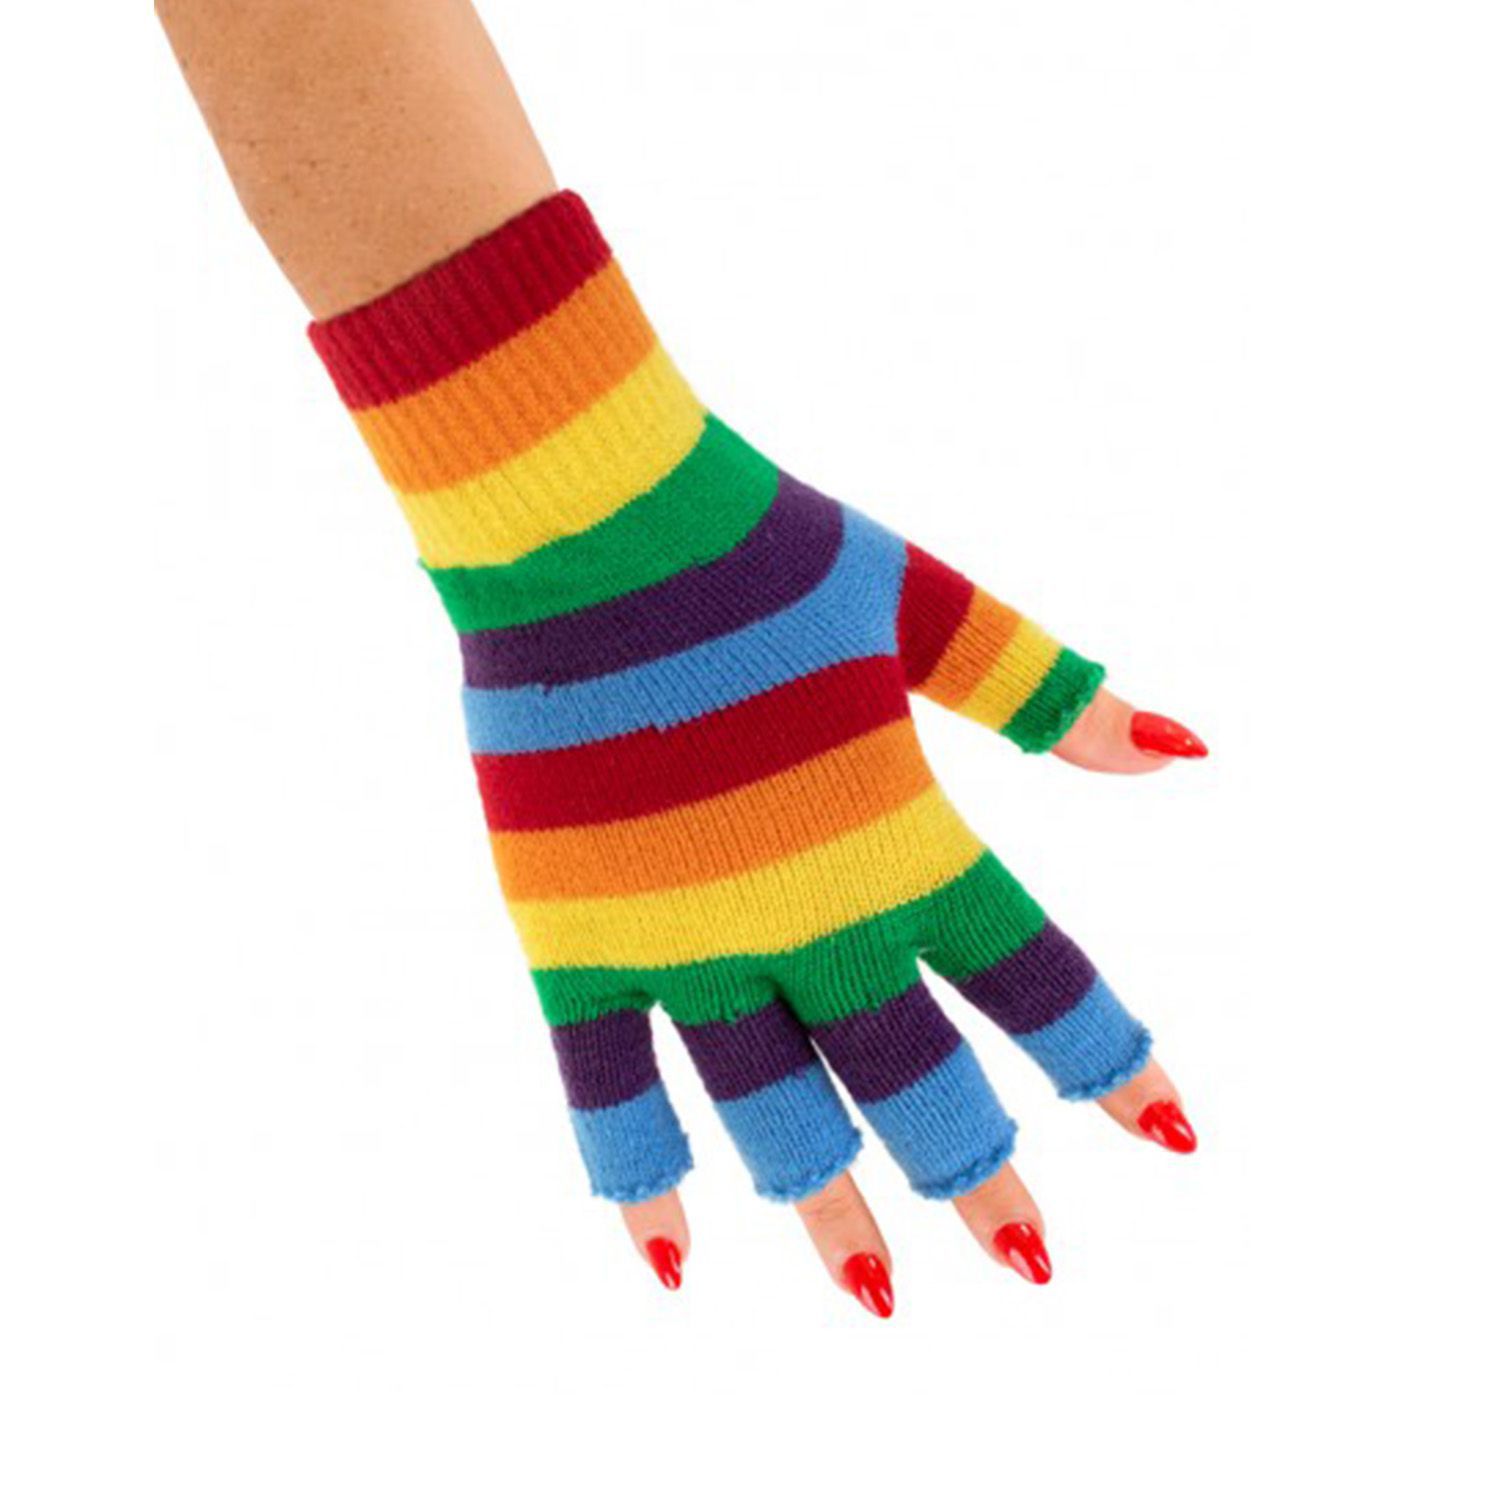 Handschoenen regenboog kopen